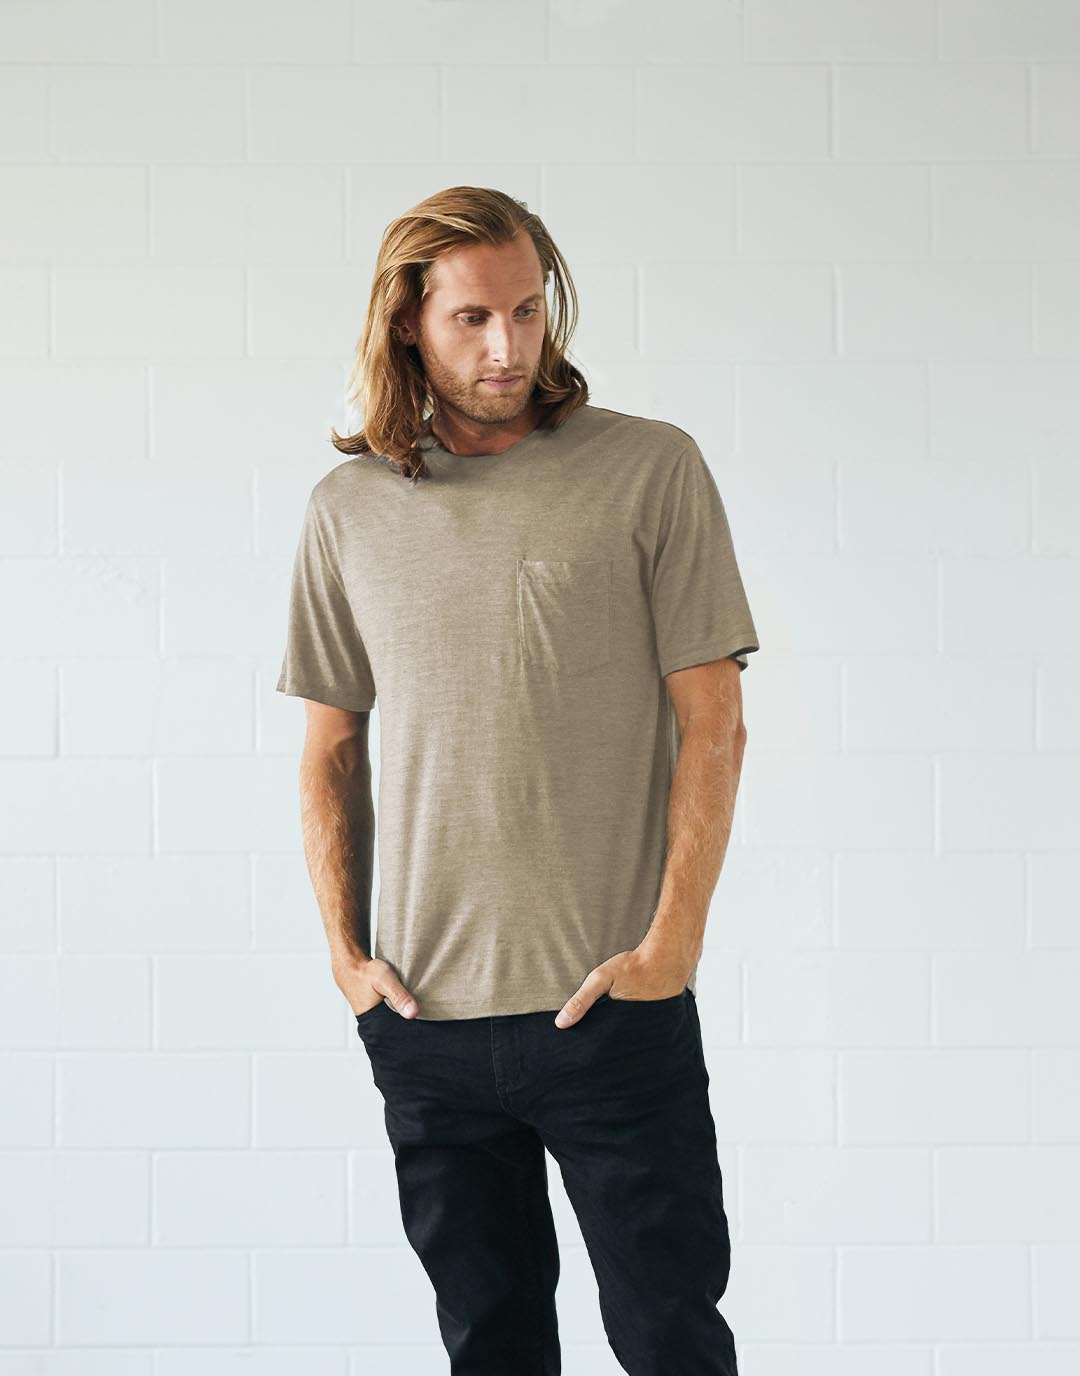 站立的男士身穿采用天然可再生植物色素印染而成的T恤